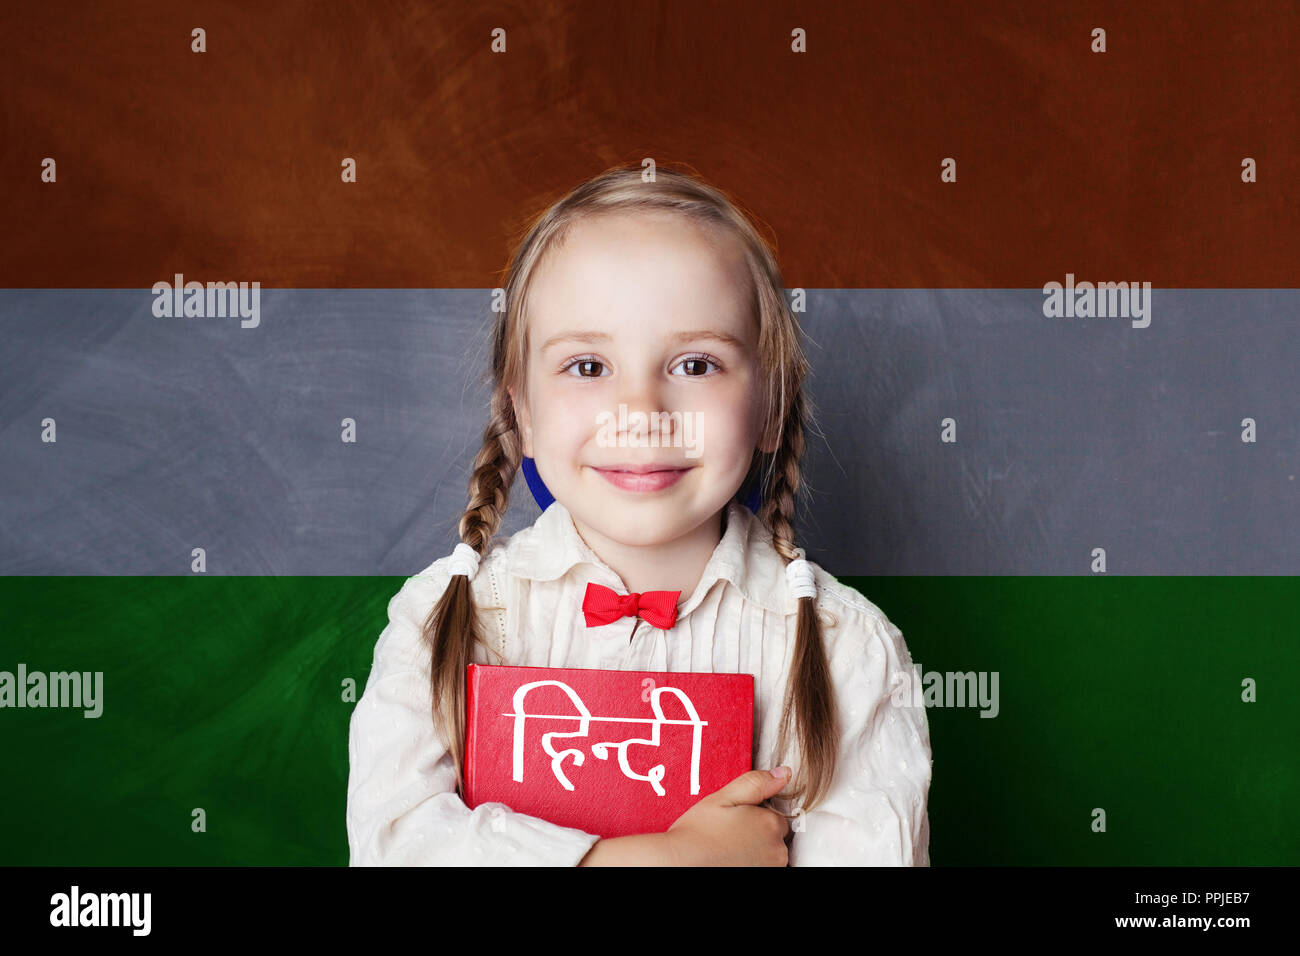 Learn hindi language. Smart child student on India flag background Stock Photo